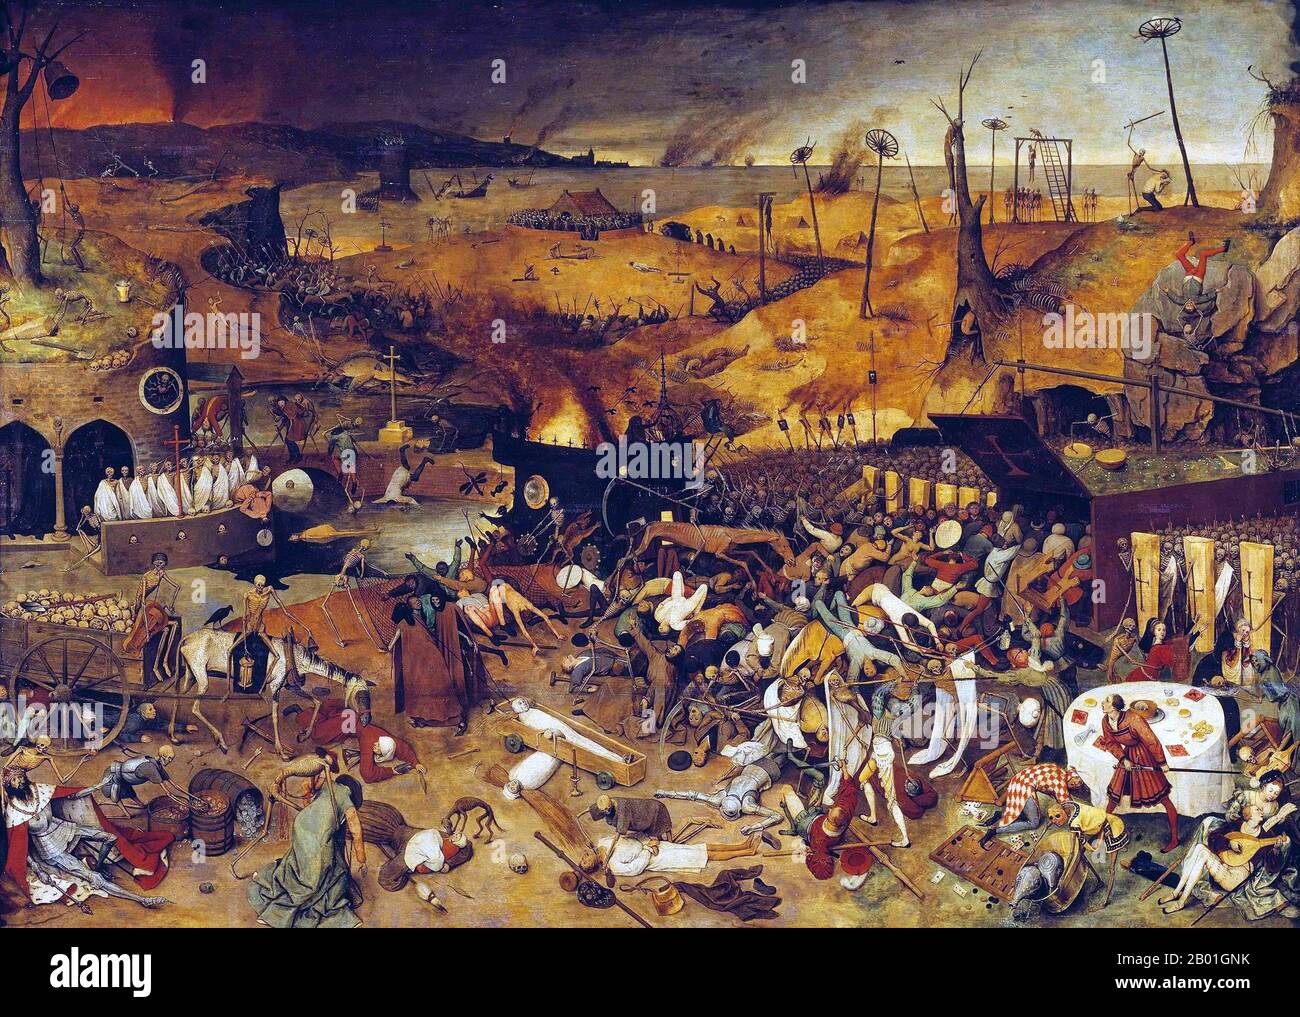 Belgien: Der Triumph des Todes. Oil on Panel Lackierung von Pieter Brueghel the Elder (1526-1569), c. 1562. Das Gemälde ist eine Panoramalandschaft: Der Himmel in der Ferne wird von Rauch aus brennenden Städten geschwärzt und das Meer ist mit Schiffswracks übersät. Armeen von Skeletten ziehen auf die Lebenden zu, die entweder in Terror fliehen oder vergeblich versuchen, sich zu wehren. Im Vordergrund transportieren Skelette einen Wagen voller Schädel und läuten die Glocke, die die Todesglocke der Welt kennzeichnet. Ein Narr spielt Laute, während ein Skelett hinter ihm mitspielt; ein hungernder Hund knabbert an das Gesicht eines Kindes. Stockfoto